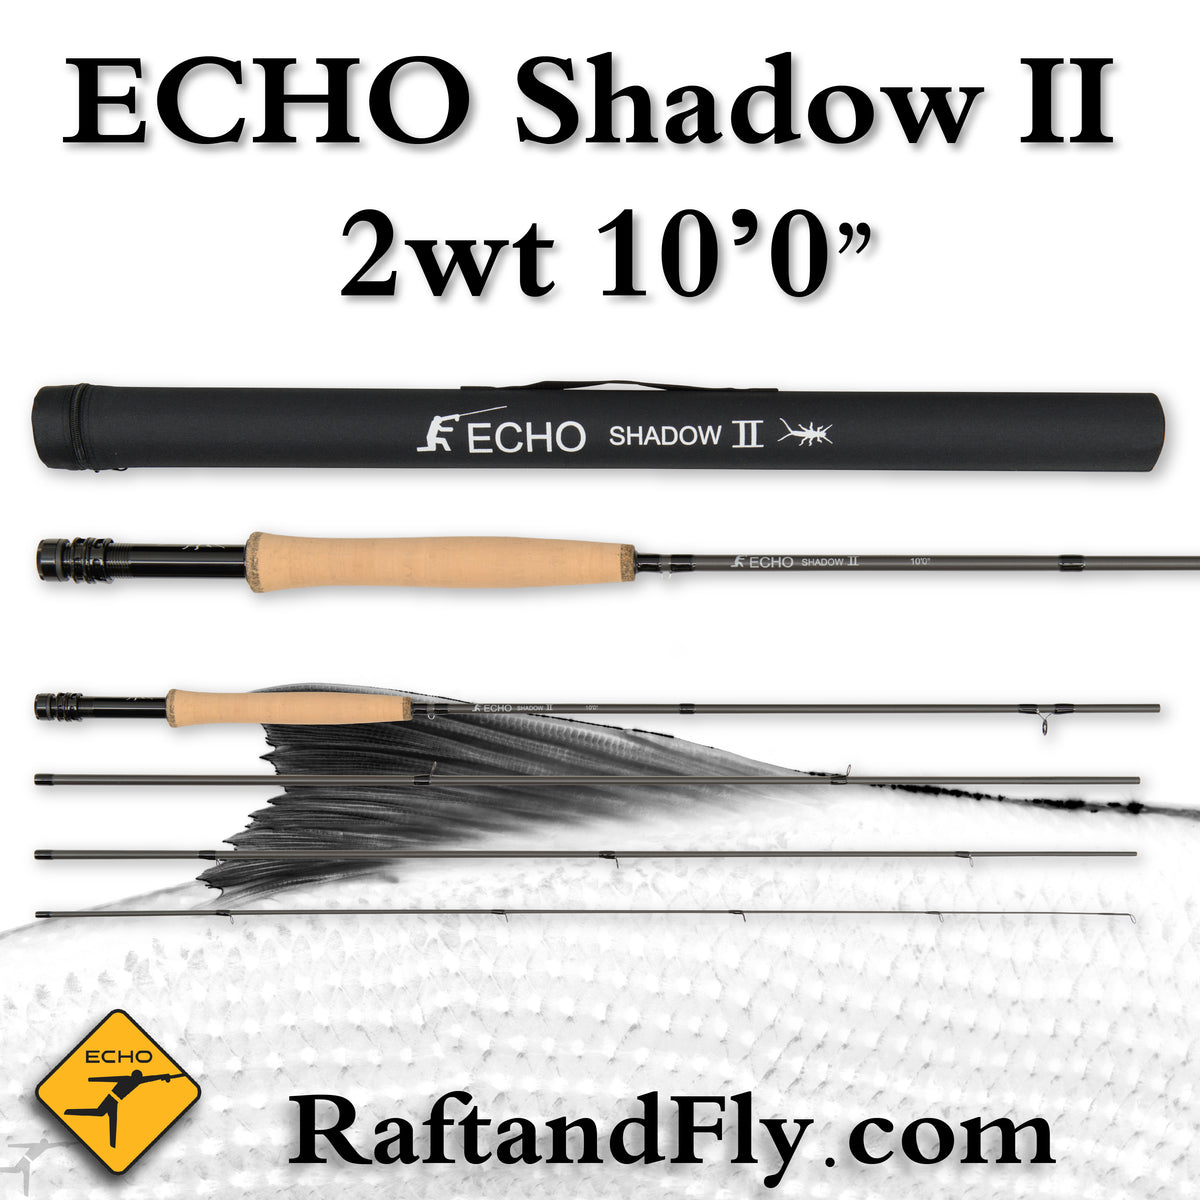 Echo Shadow II 2wt 10'0